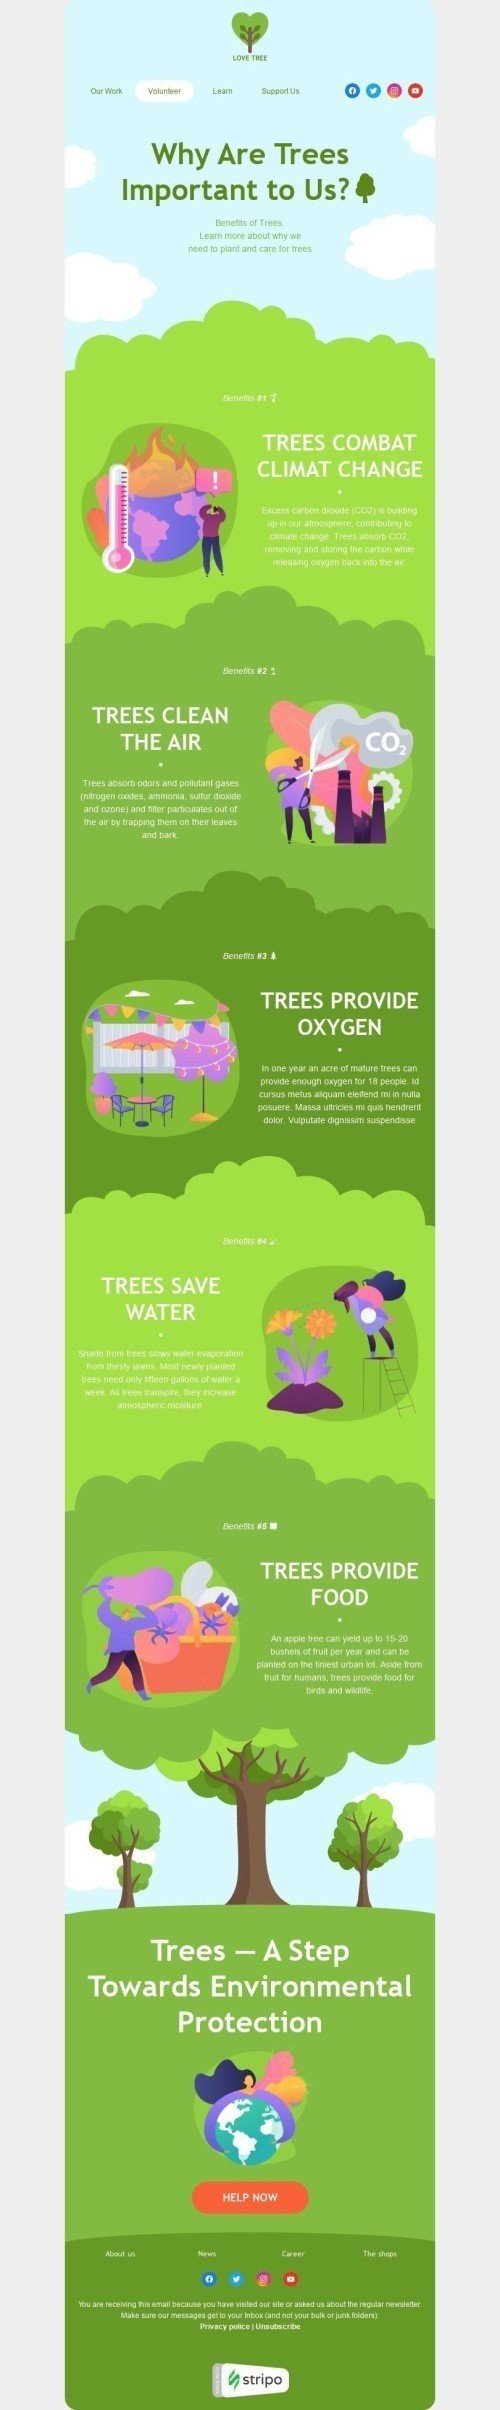 Шаблон листа до свята Всесвітній день охорони довкілля «Дерева важливі для нас» для індустрії «Фандрейзинг» десктопний вигляд